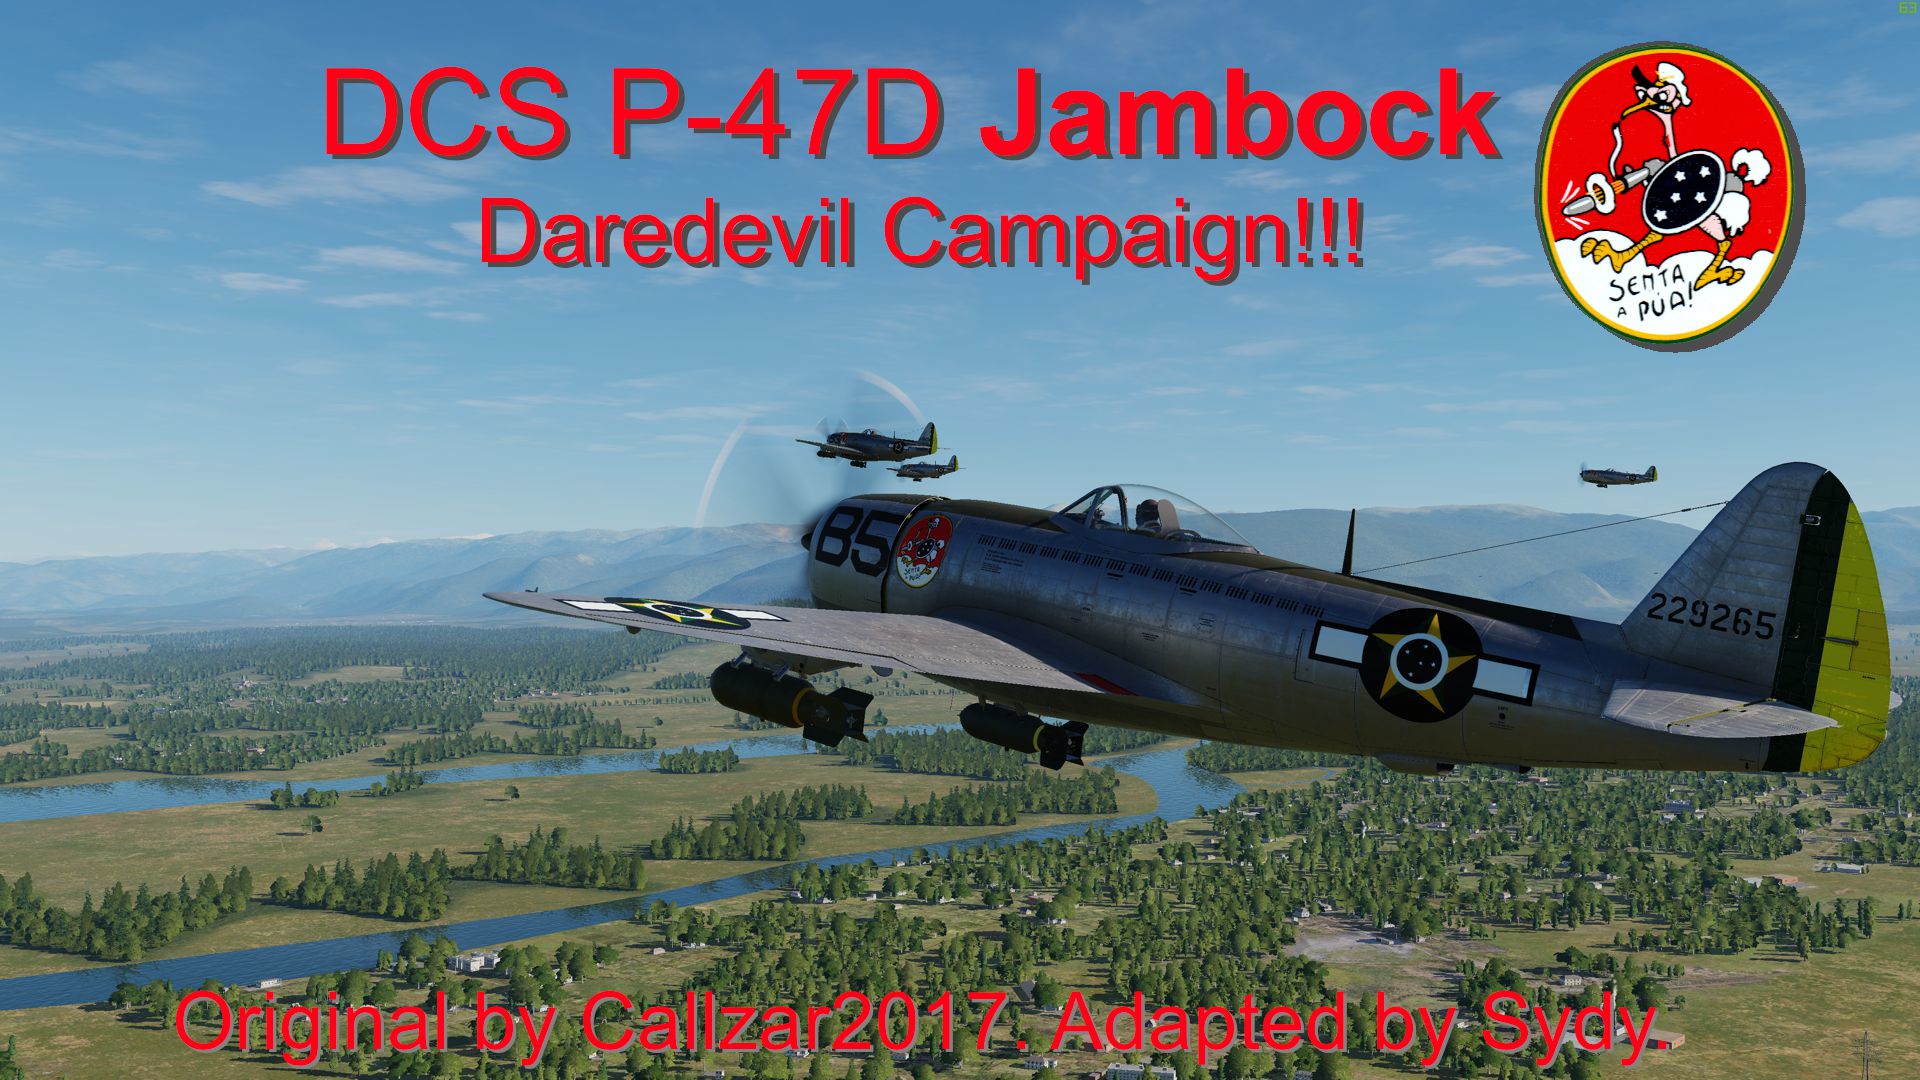 P-47D Jambock Daredevil Campaign